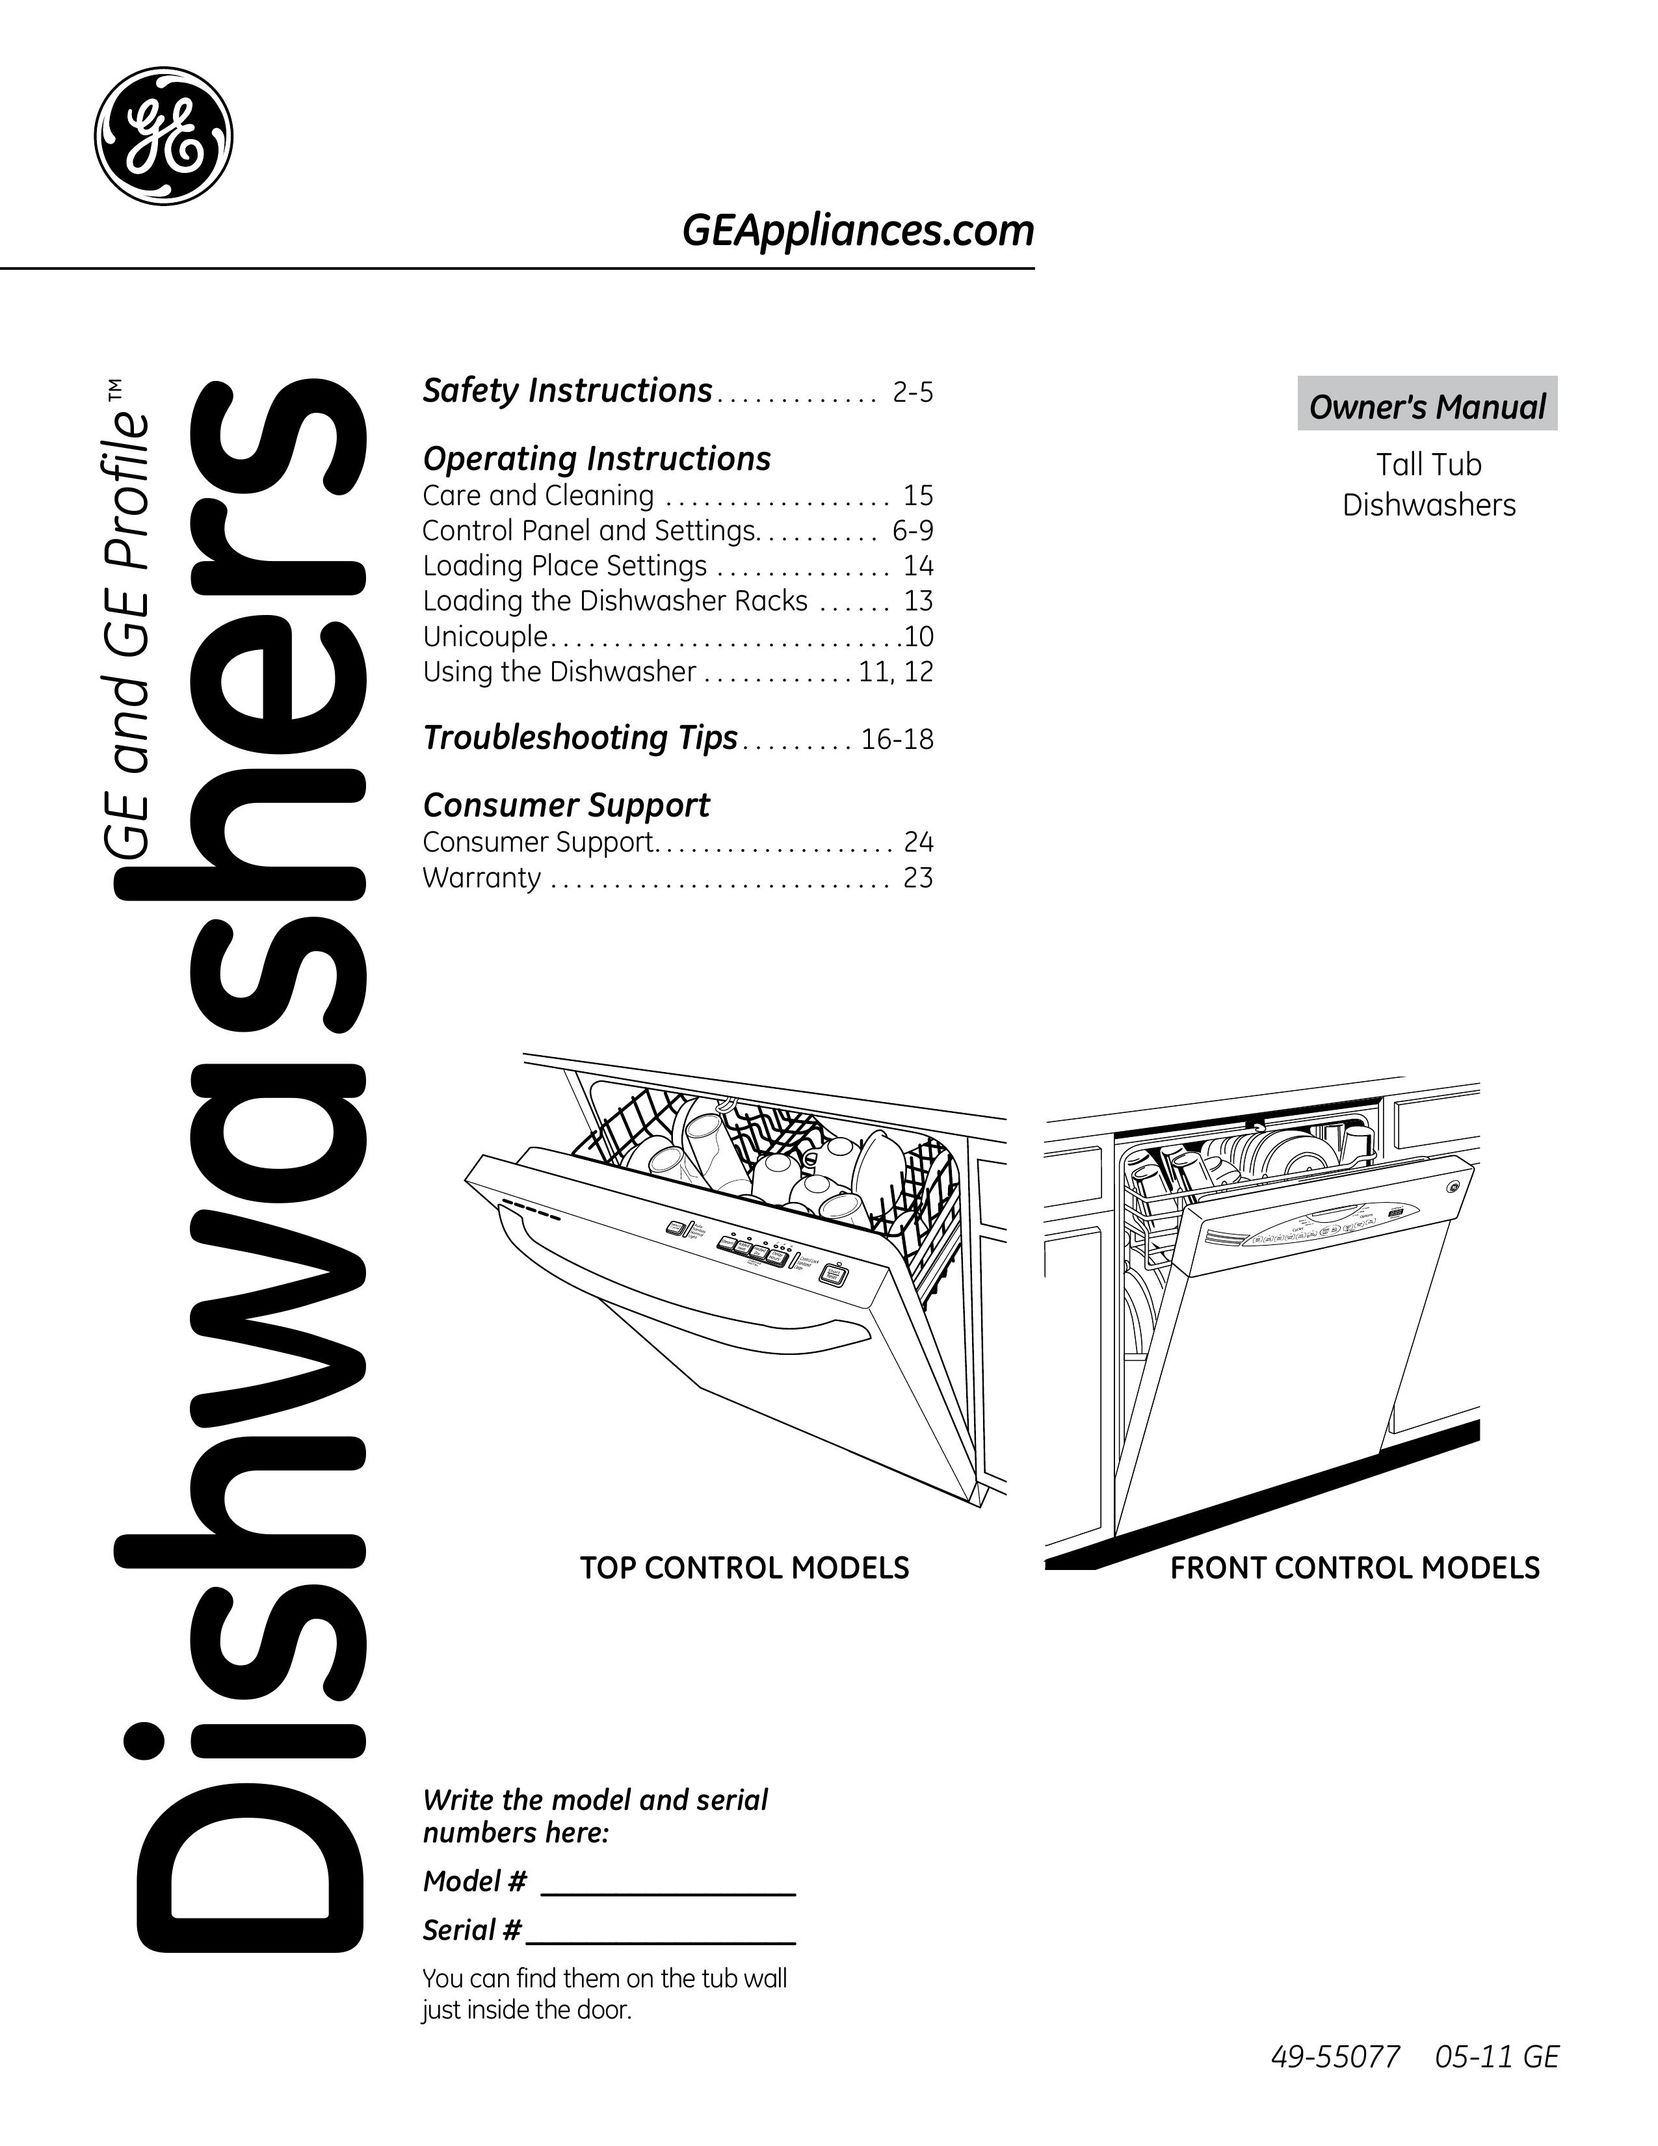 GE 49-55077 05-11 GE Dishwasher User Manual